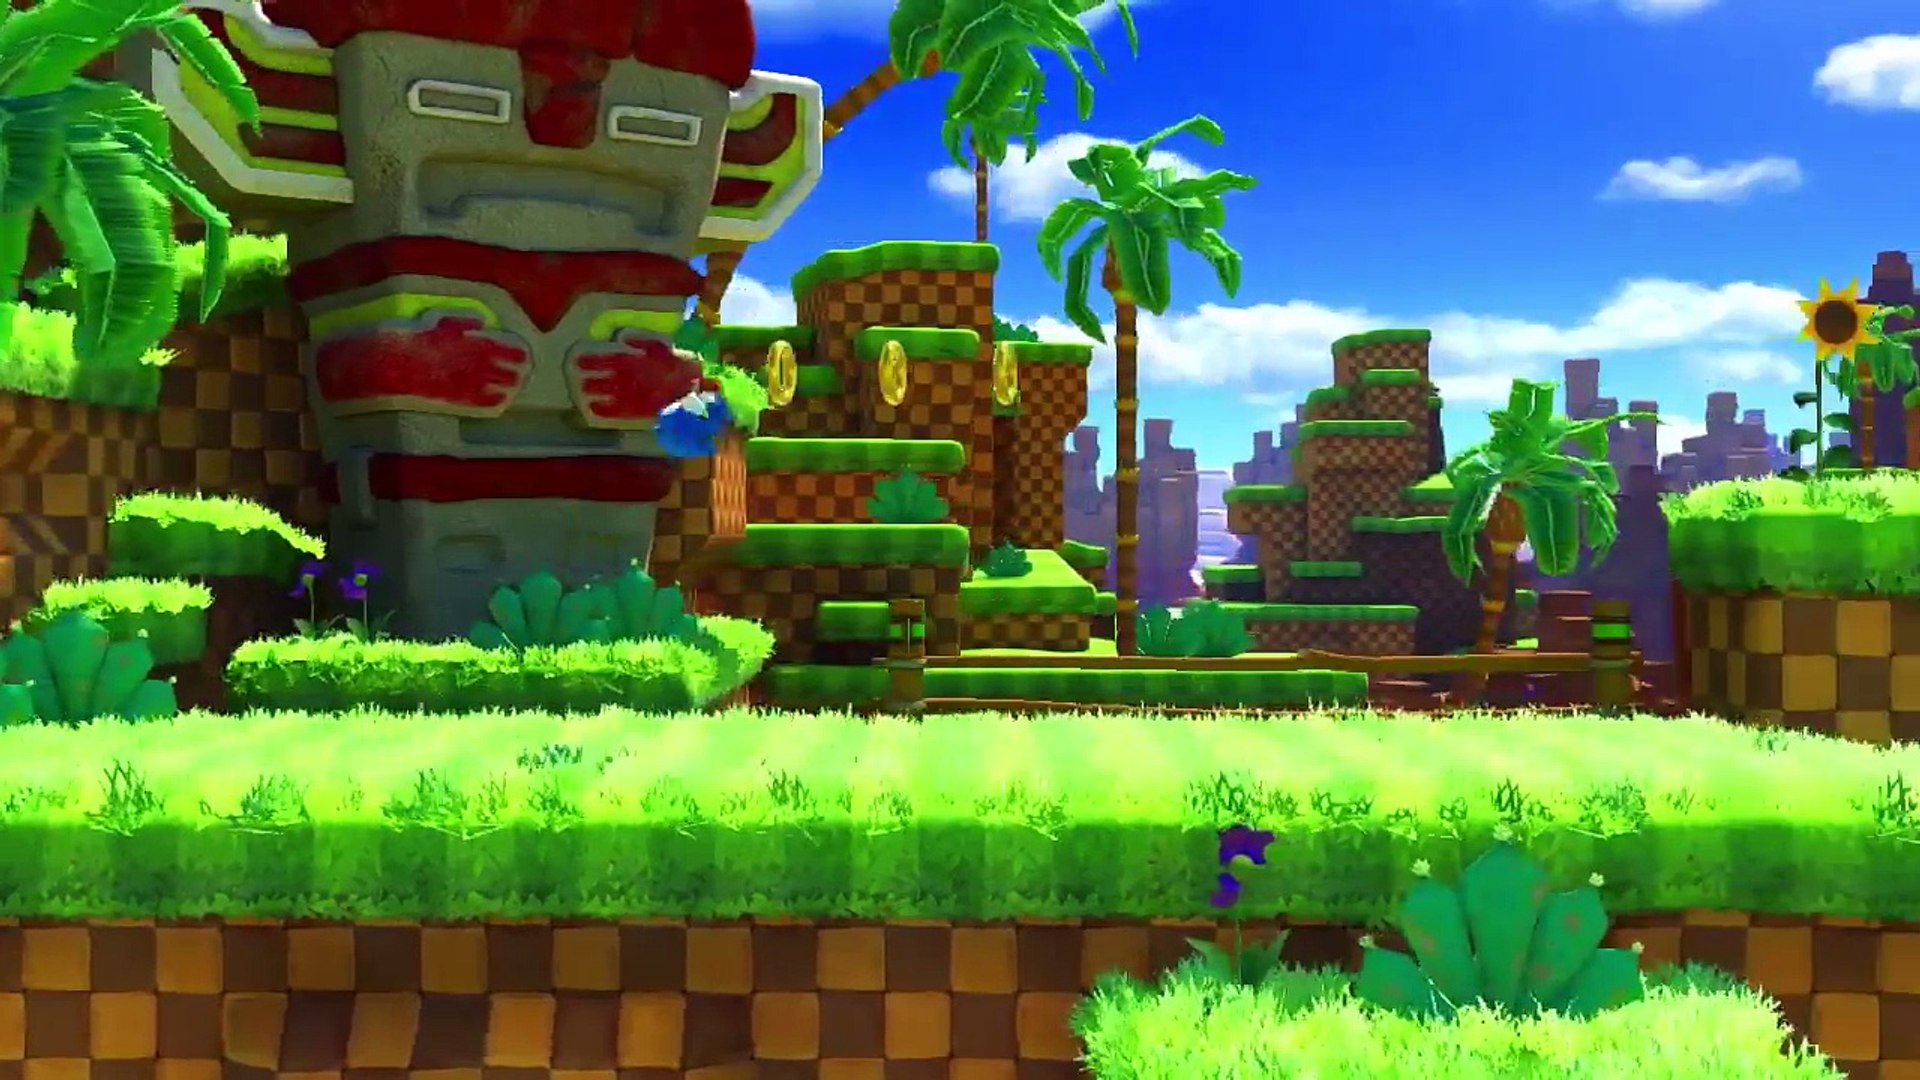 Sonic Forces - Green Hill Zone: Nếu bạn là fan của Sonic làm sao có thể bỏ qua Sonic Forces và Green Hill Zone? Hãy tưởng tượng một chuyến phiêu lưu đầy tốc độ và sự kỳ diệu trong vùng đất Green Hill Zone. Hình ảnh liên quan sẽ đưa bạn đến trải nghiệm thực tế của trò chơi và tạo ra niềm hứng khởi cho người xem.